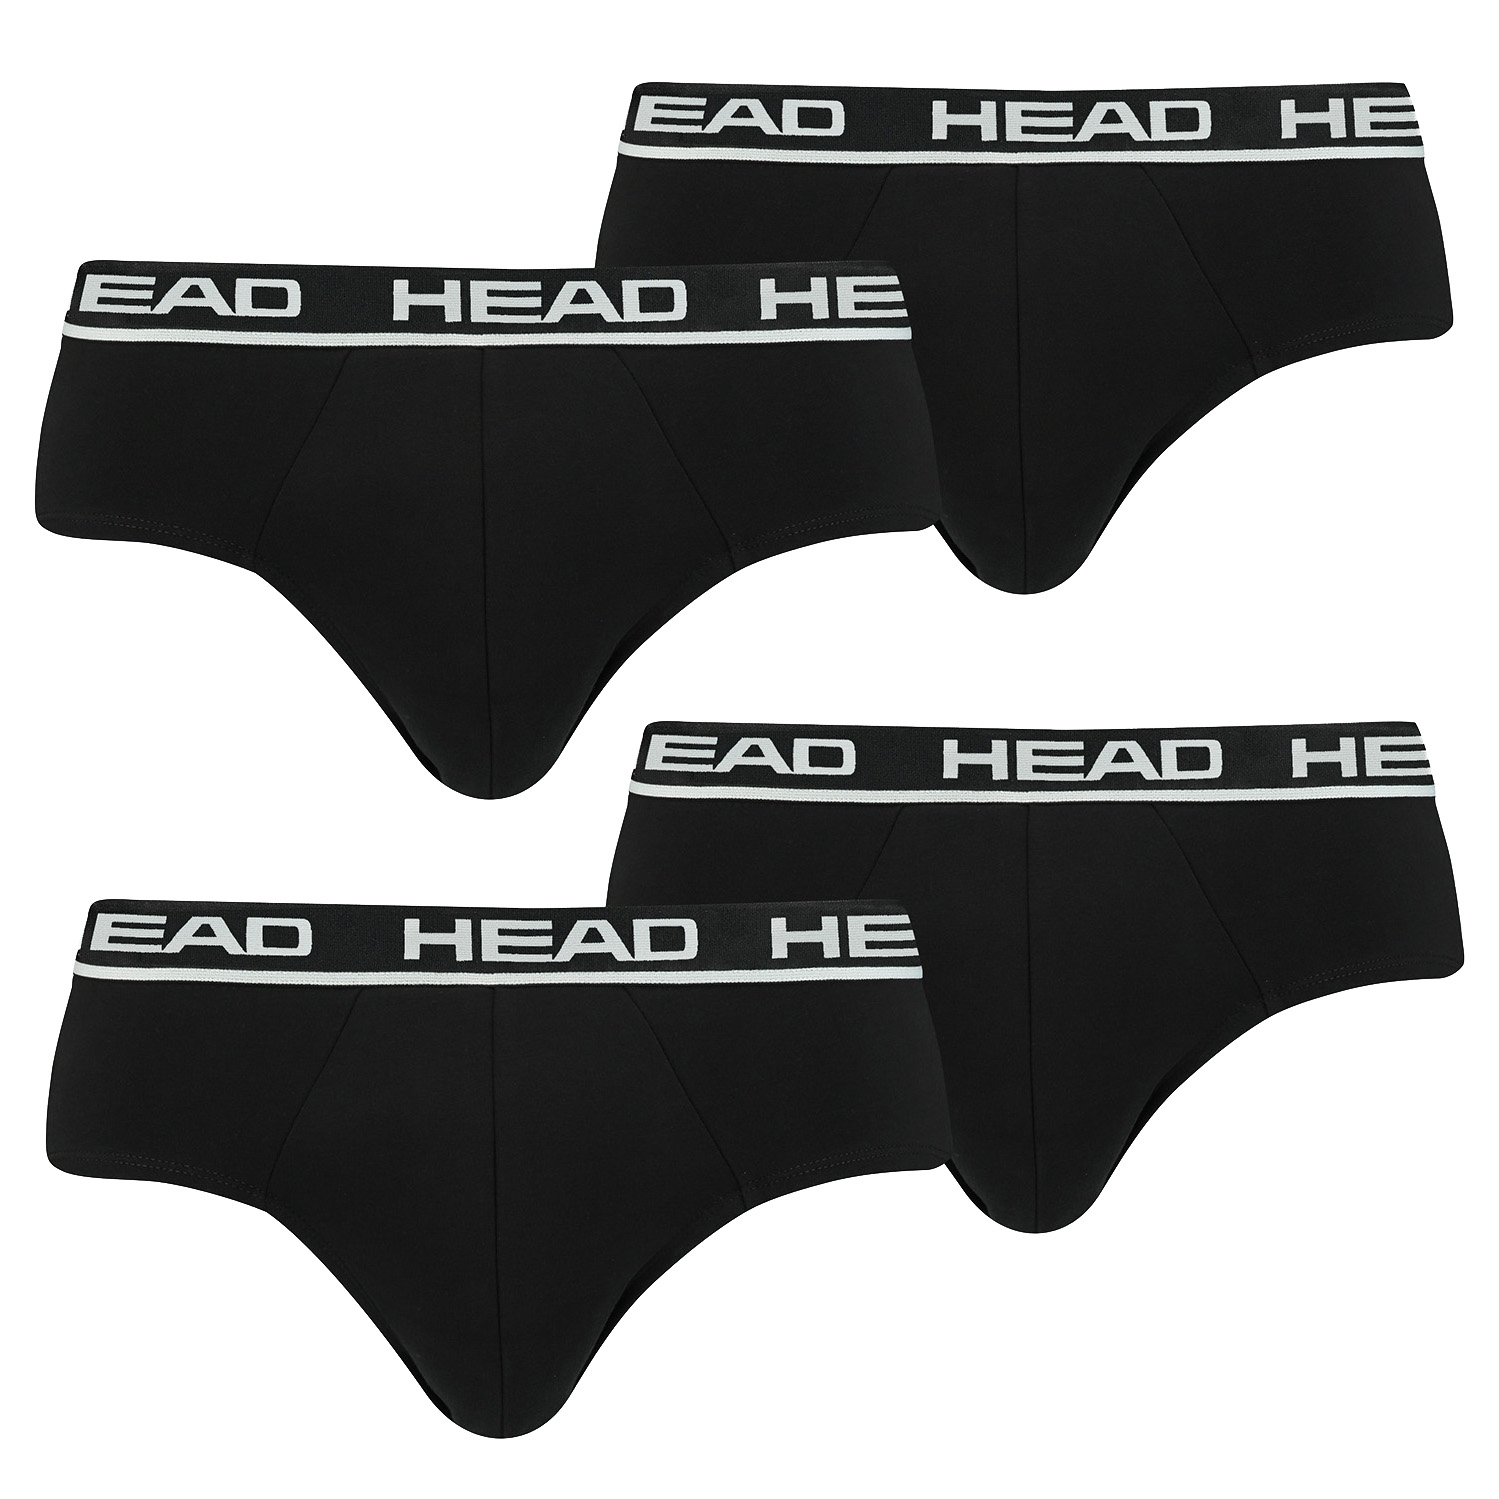 HEAD Herren Basic Brief Pant Slip Unterwäsche Unterhose 6 er Pack , Farbe:002 - Black, Bekleidungsgröße:M